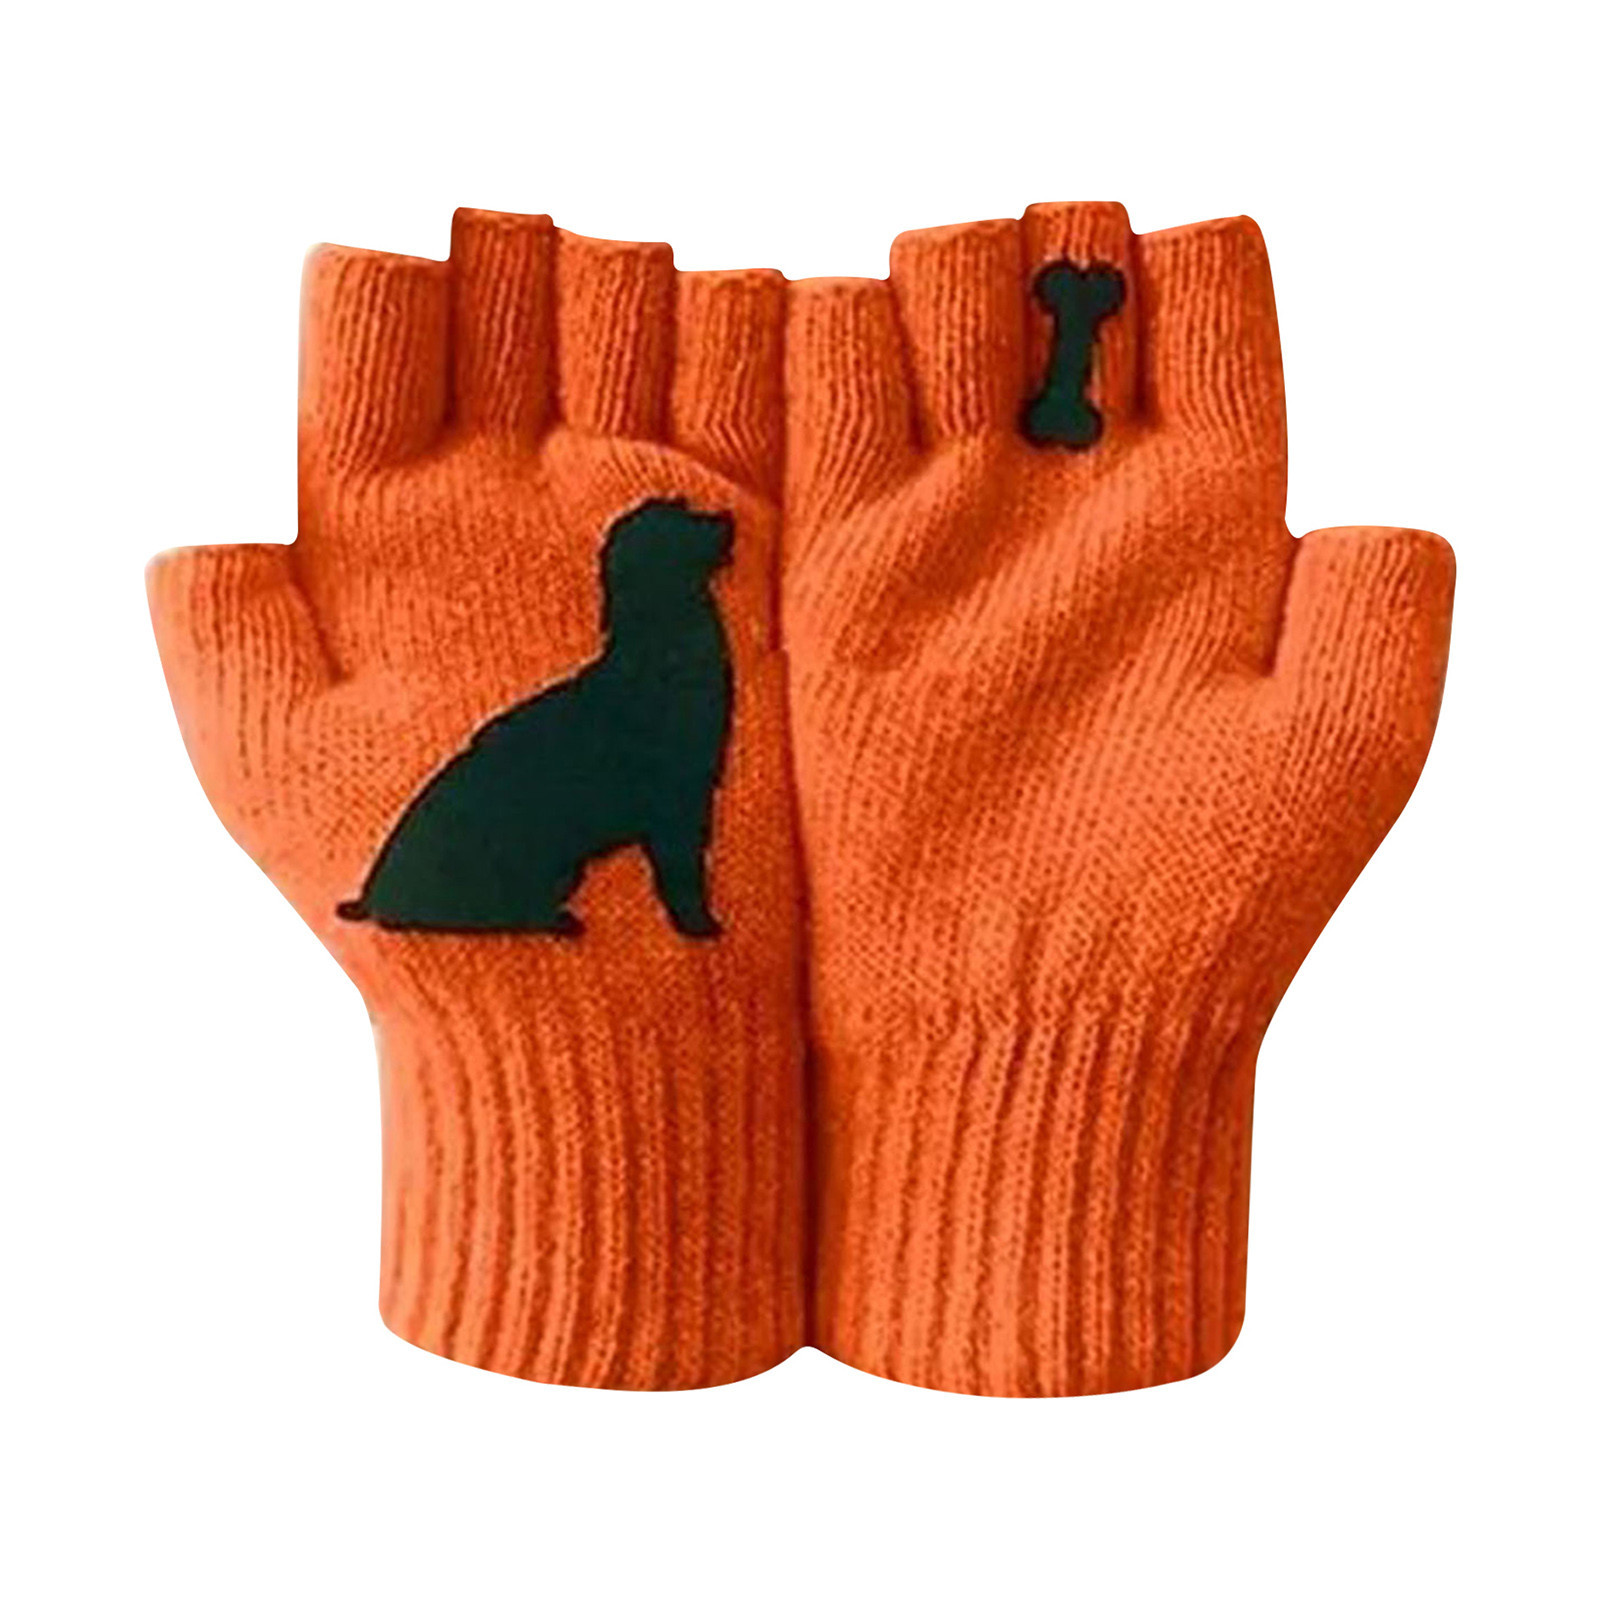 Ladies Woolen Gloves Autumn Winter Outdoor Warm Dog Bones Print Gloves Soft Fingerless Gloves Mittens Knitted Glove Hand Warmer